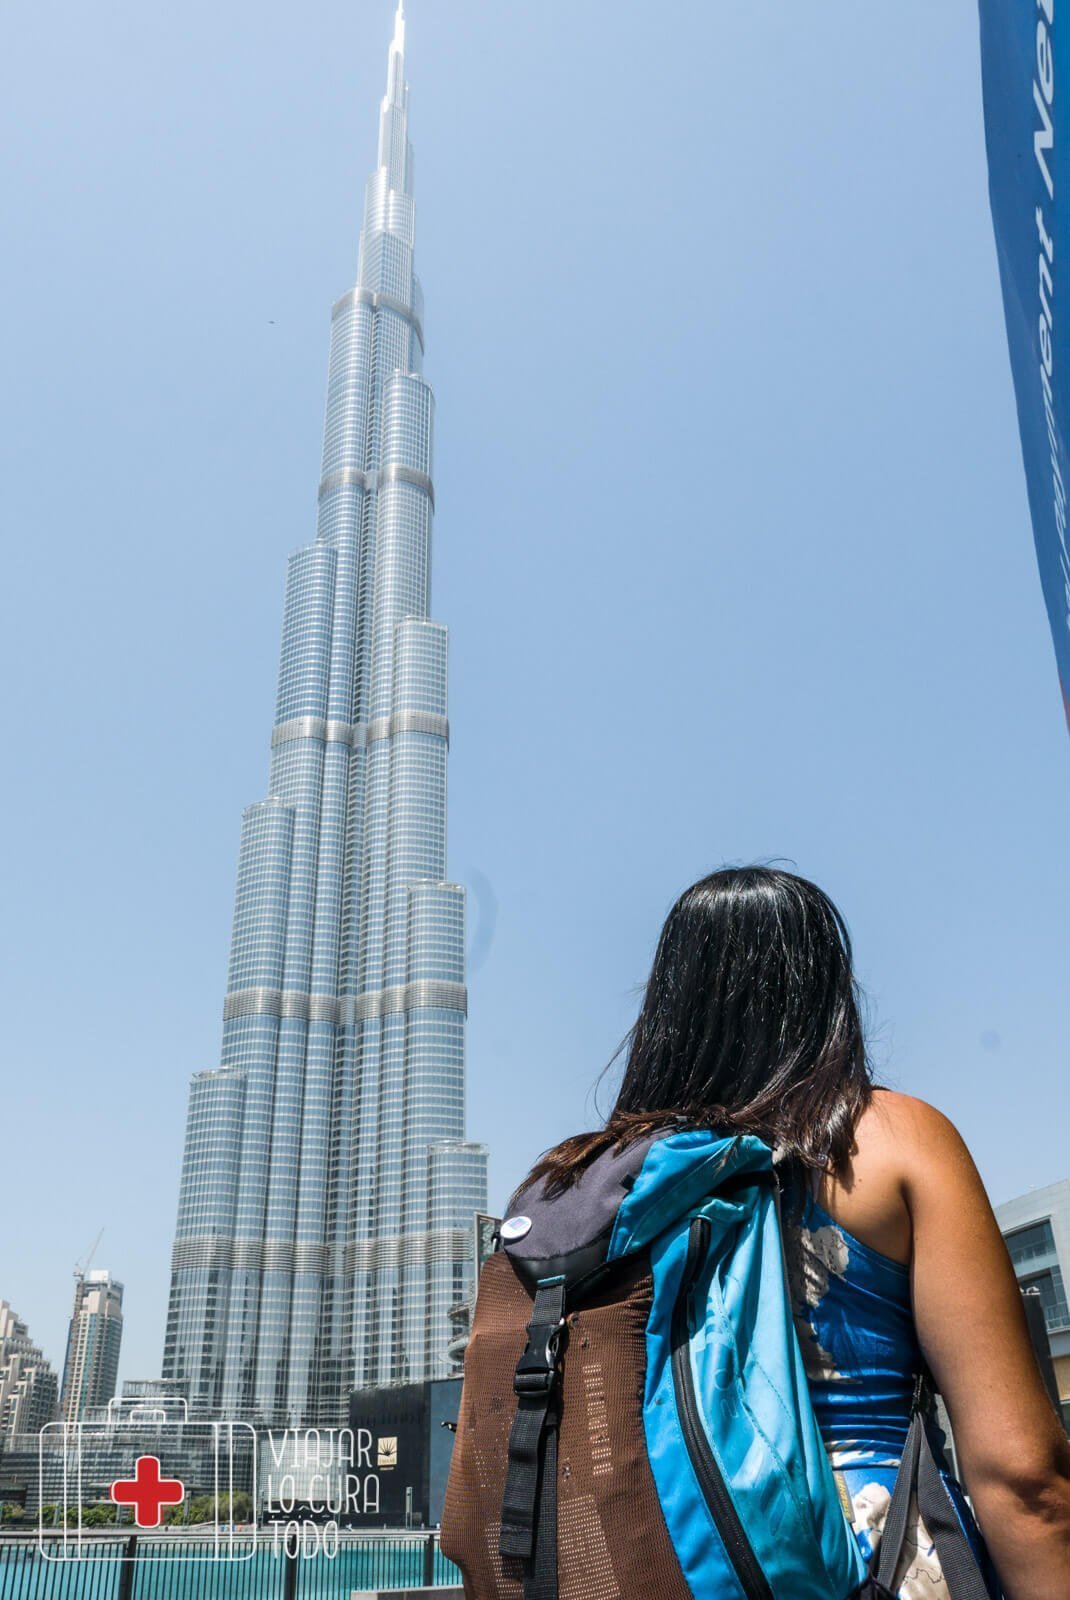 burj khalifa Dubai